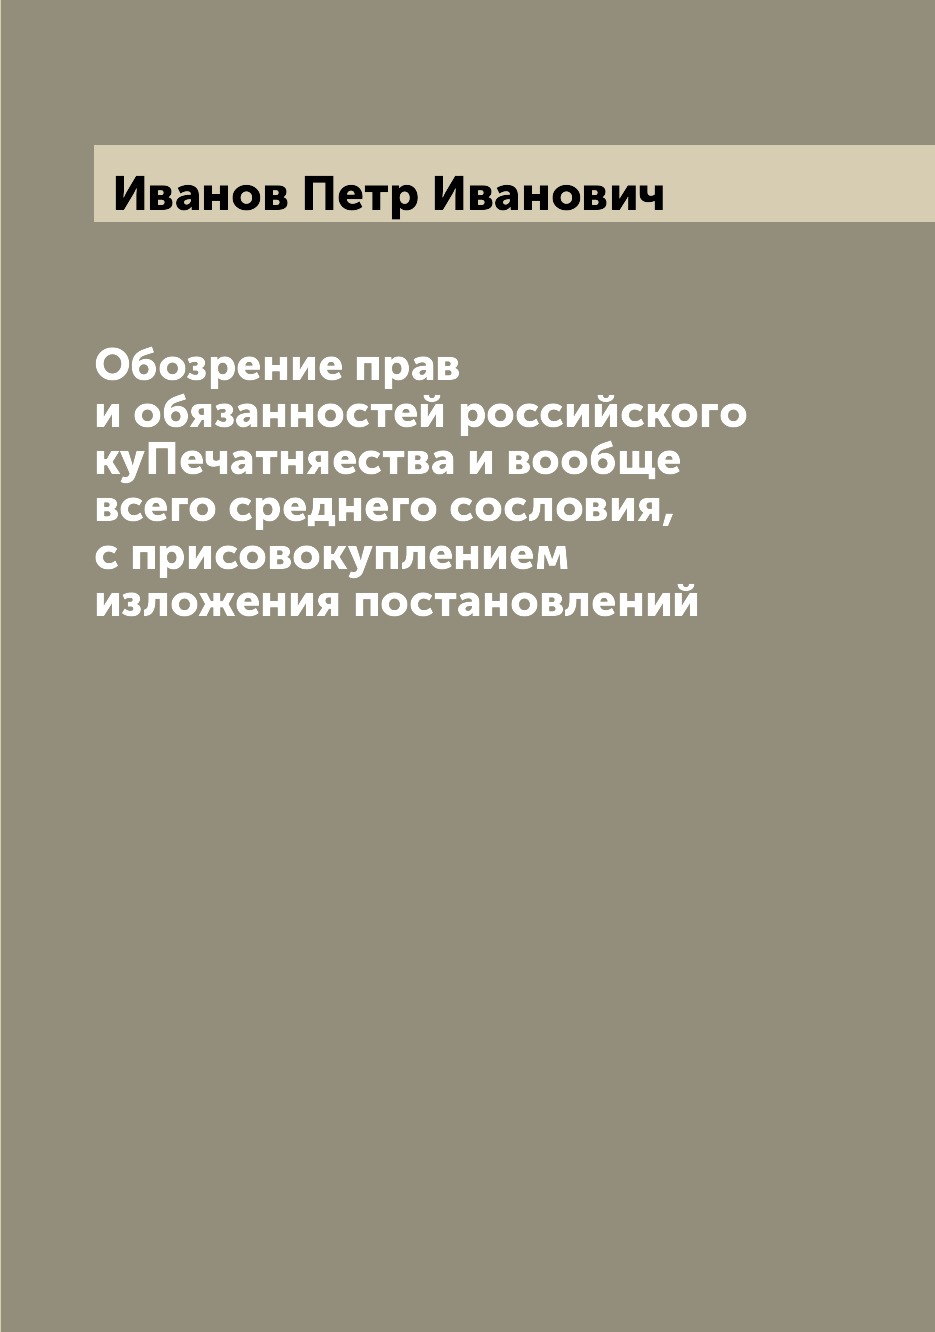 Книга Обозрение прав и обязанностей российского куПечатняества и вообще всего среднего ...